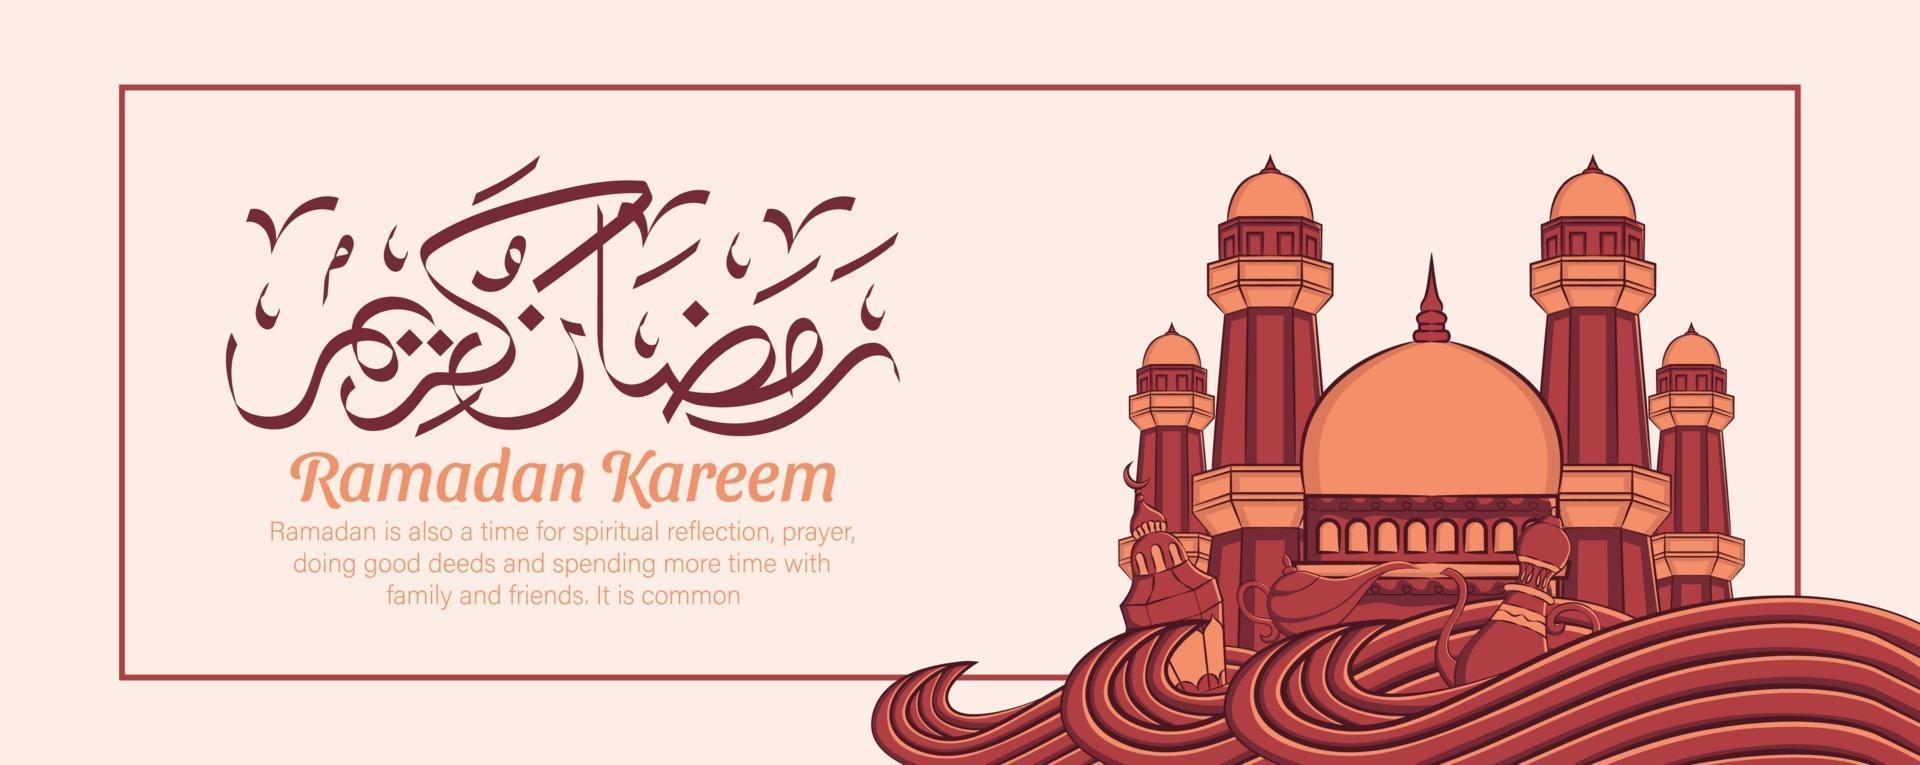 Banner de Ramadán Kareem con adornos de ilustración islámica dibujados a mano sobre fondo blanco. vector